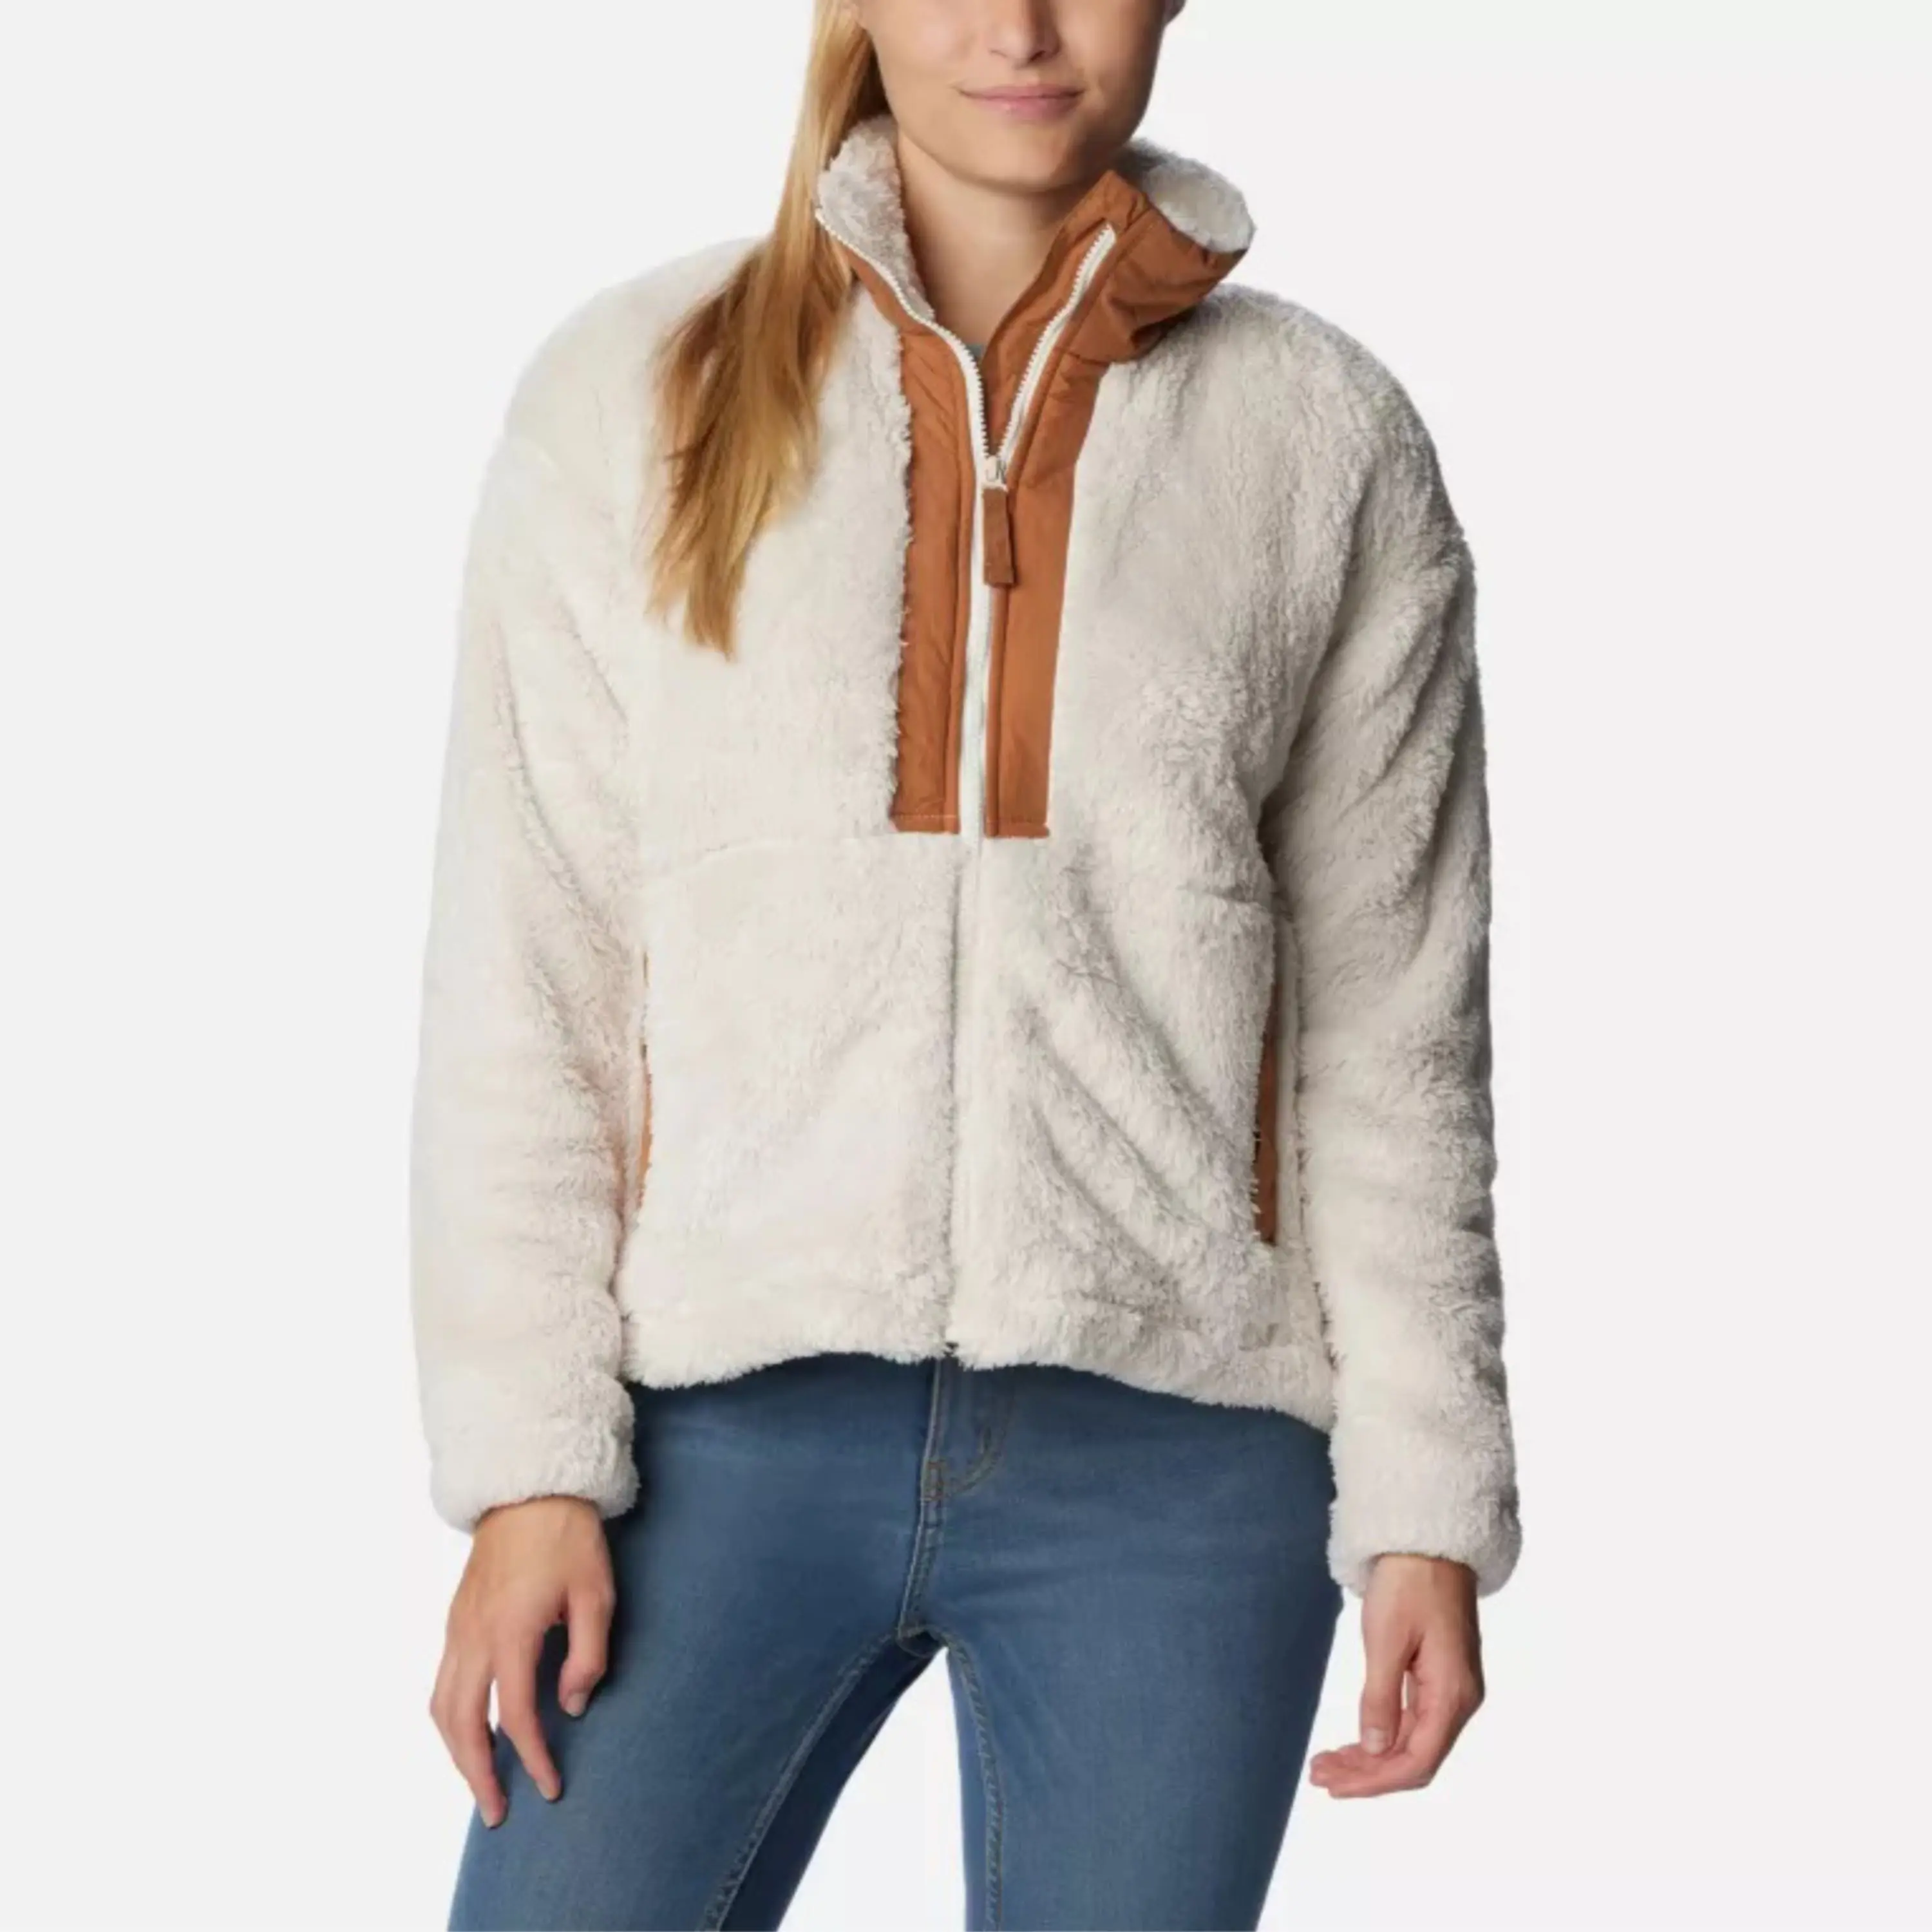 OEM Custom Design Blank Wholesale Sherpa Wool Jacket Fleece Zip Up Jacket Custom women Sherpa Fleece Jacket For Sale